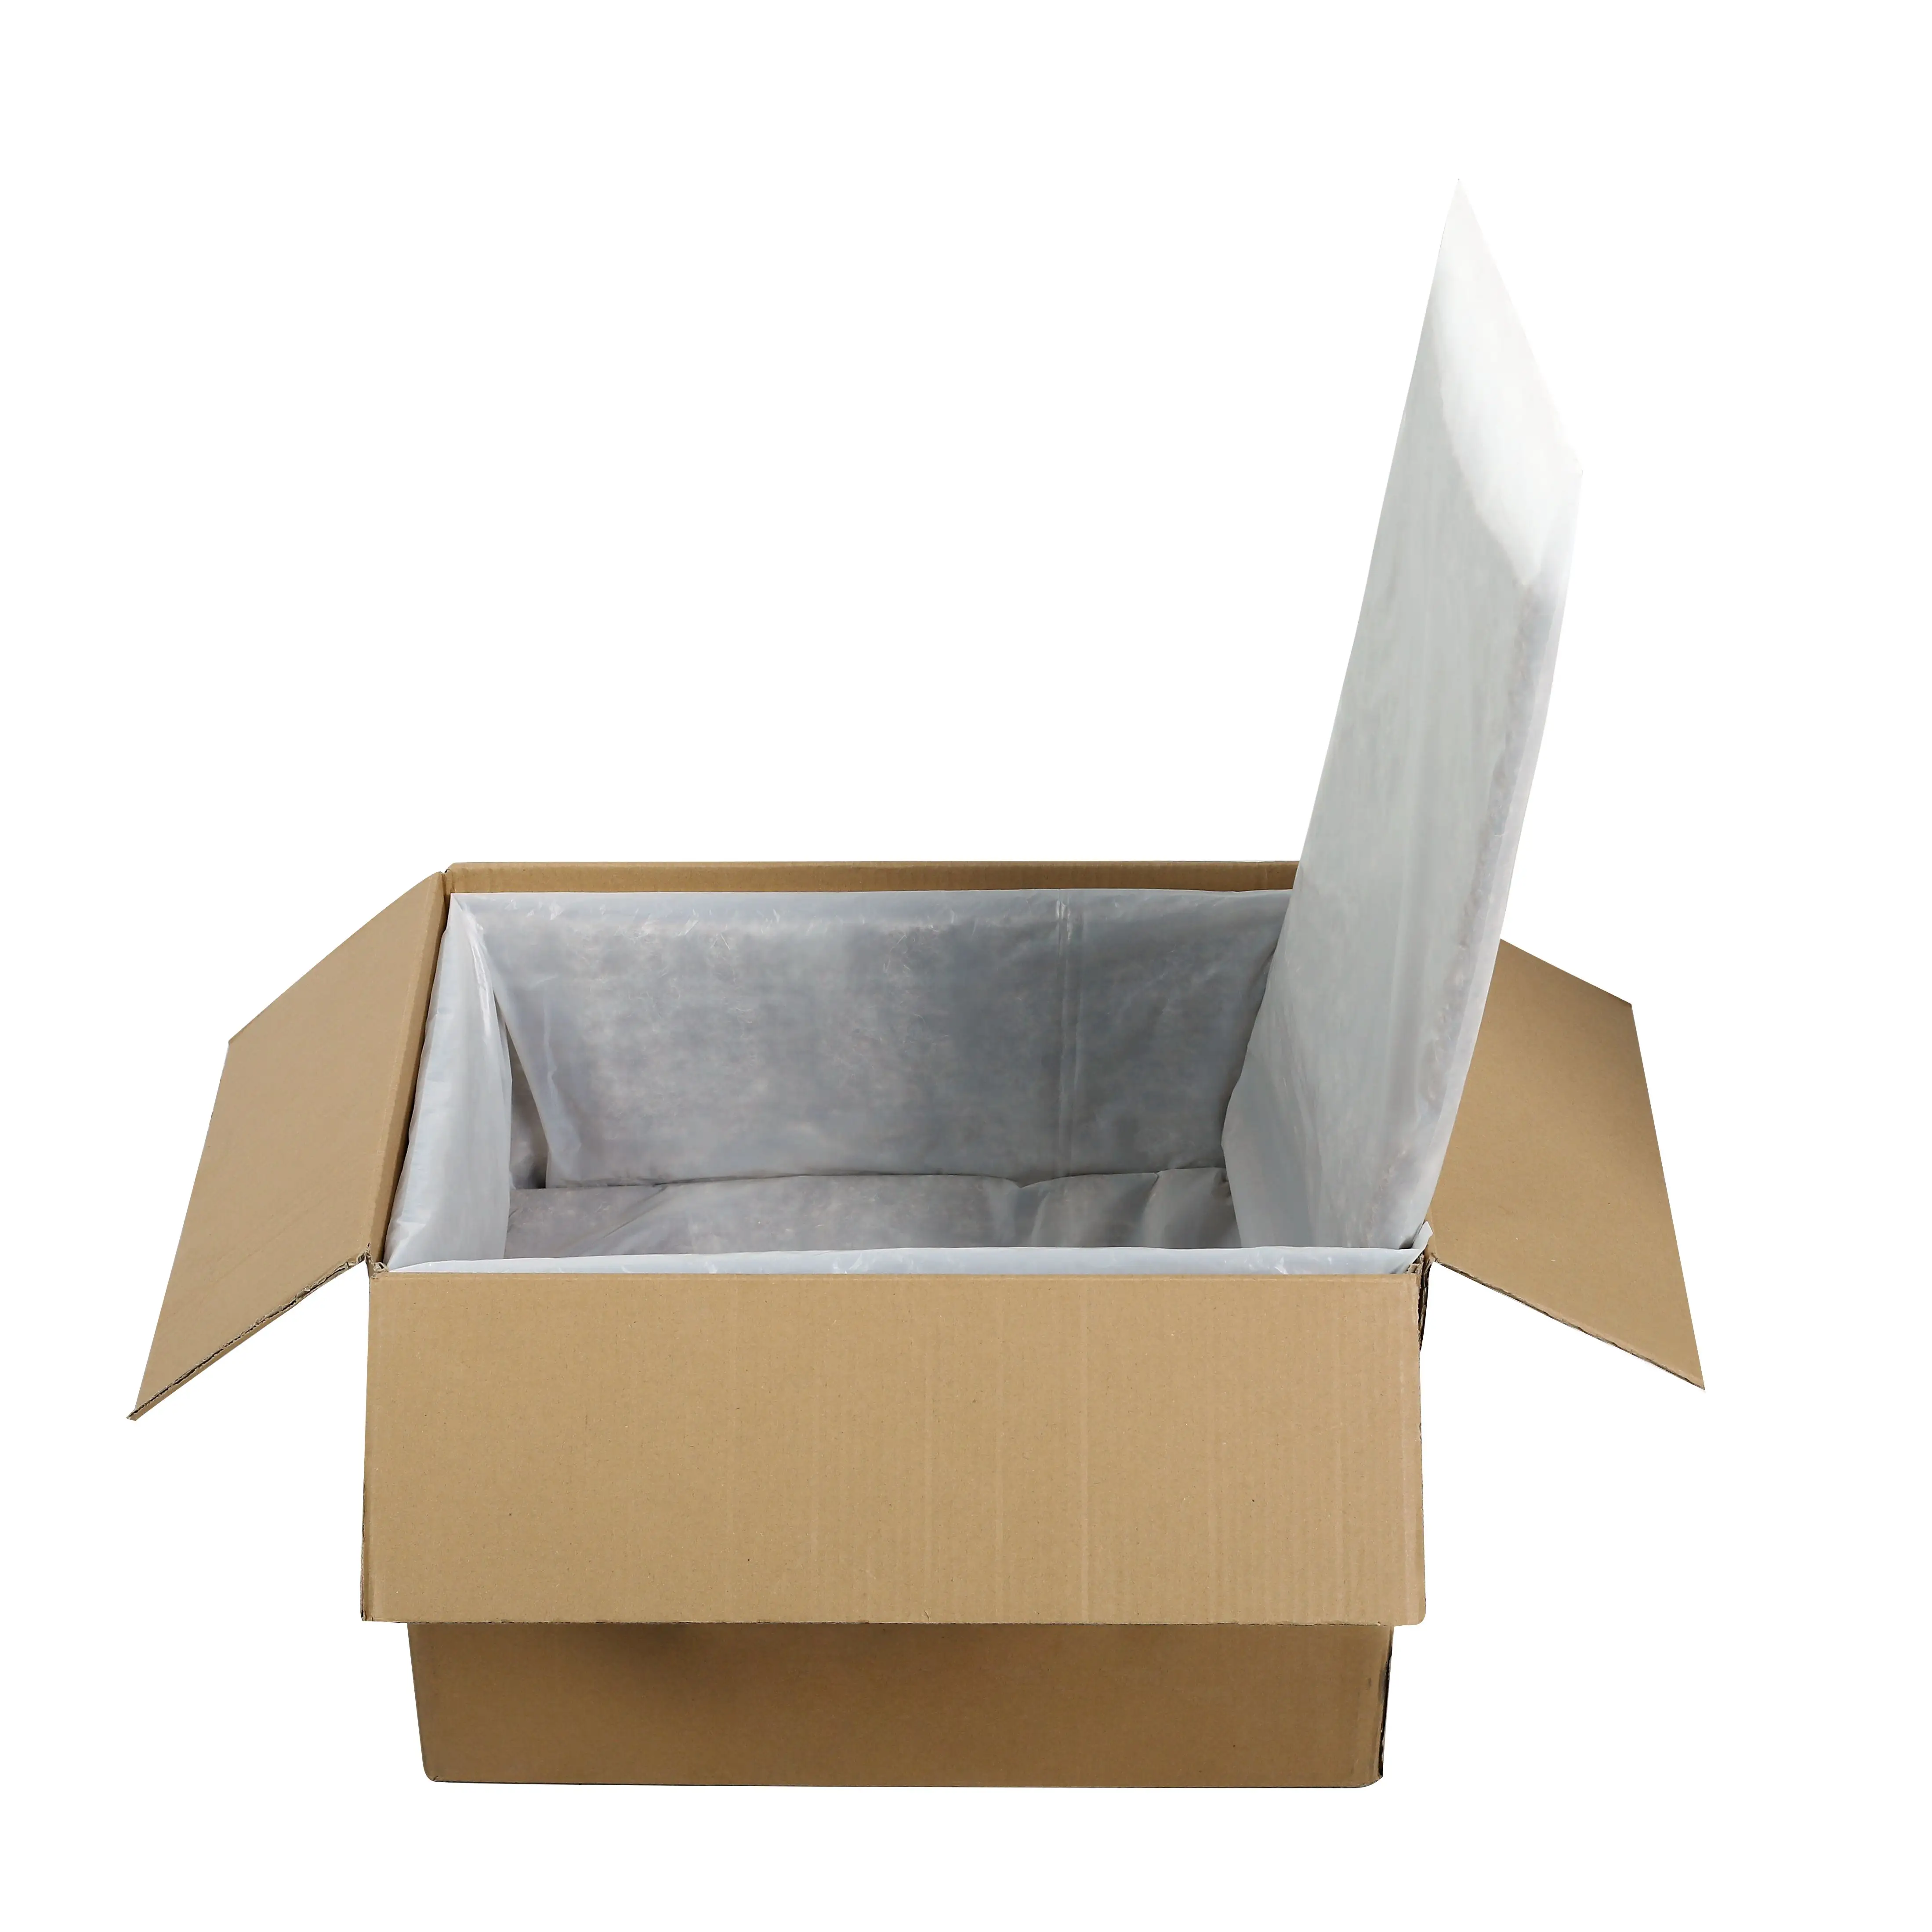 100 felted ऊन इन्सुलेशन लाइनर थर्मल बॉक्स पैनल जमे हुए भोजन के लिए परिवहन के लिए